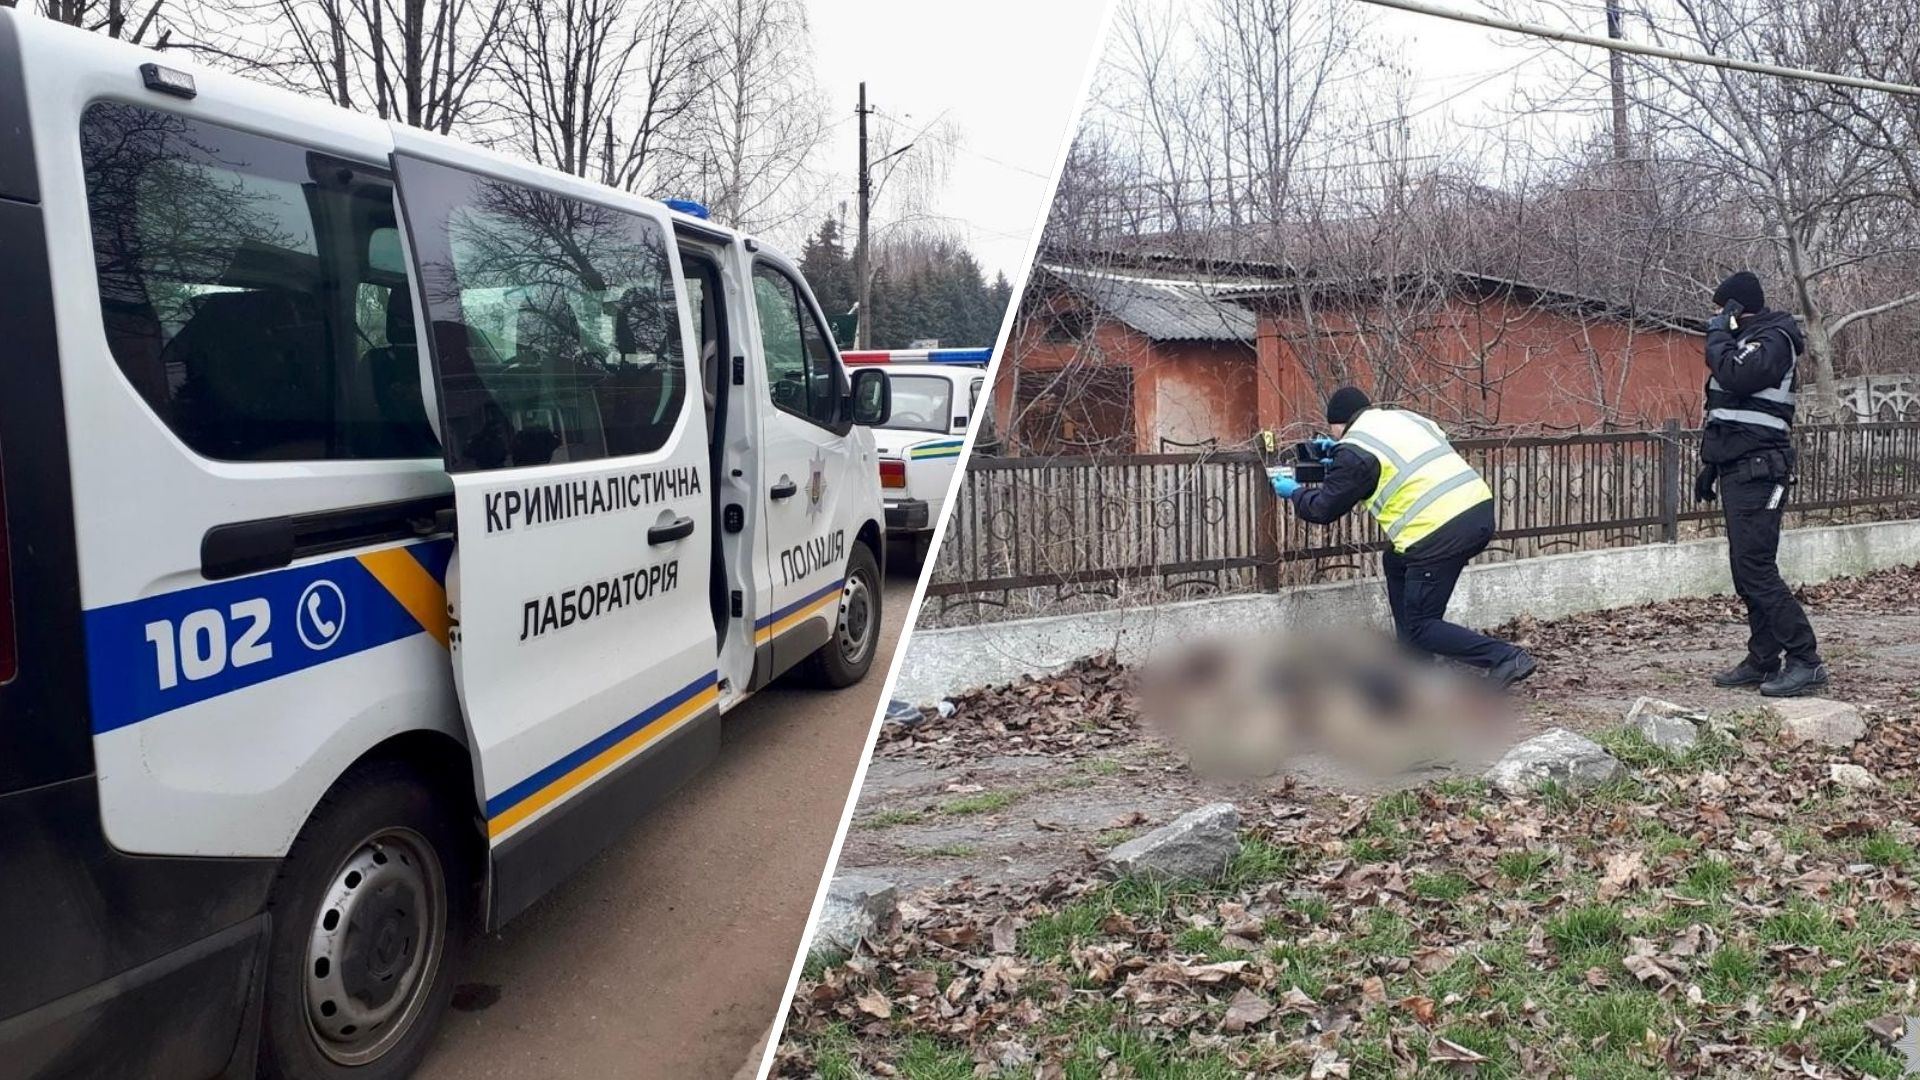 8 березня у місті Подільськ Одеської області на вулиці знайшли тіло невідомого чоловіка у військовій формі.